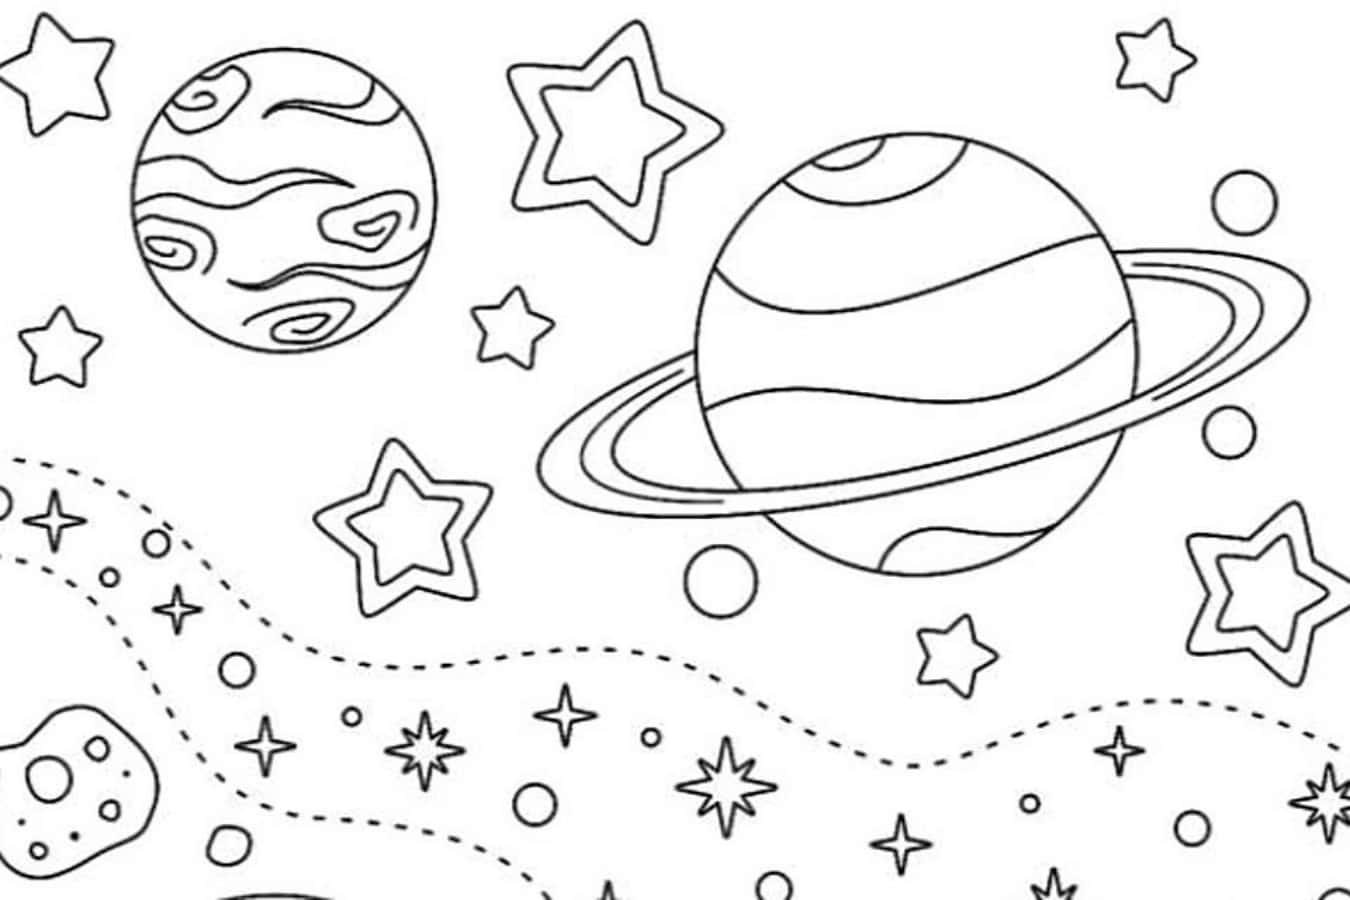 Раскраска космос и планеты. Раскраска. В космосе. Космос раскраска для детей. Раскраска космос и планеты для детей.